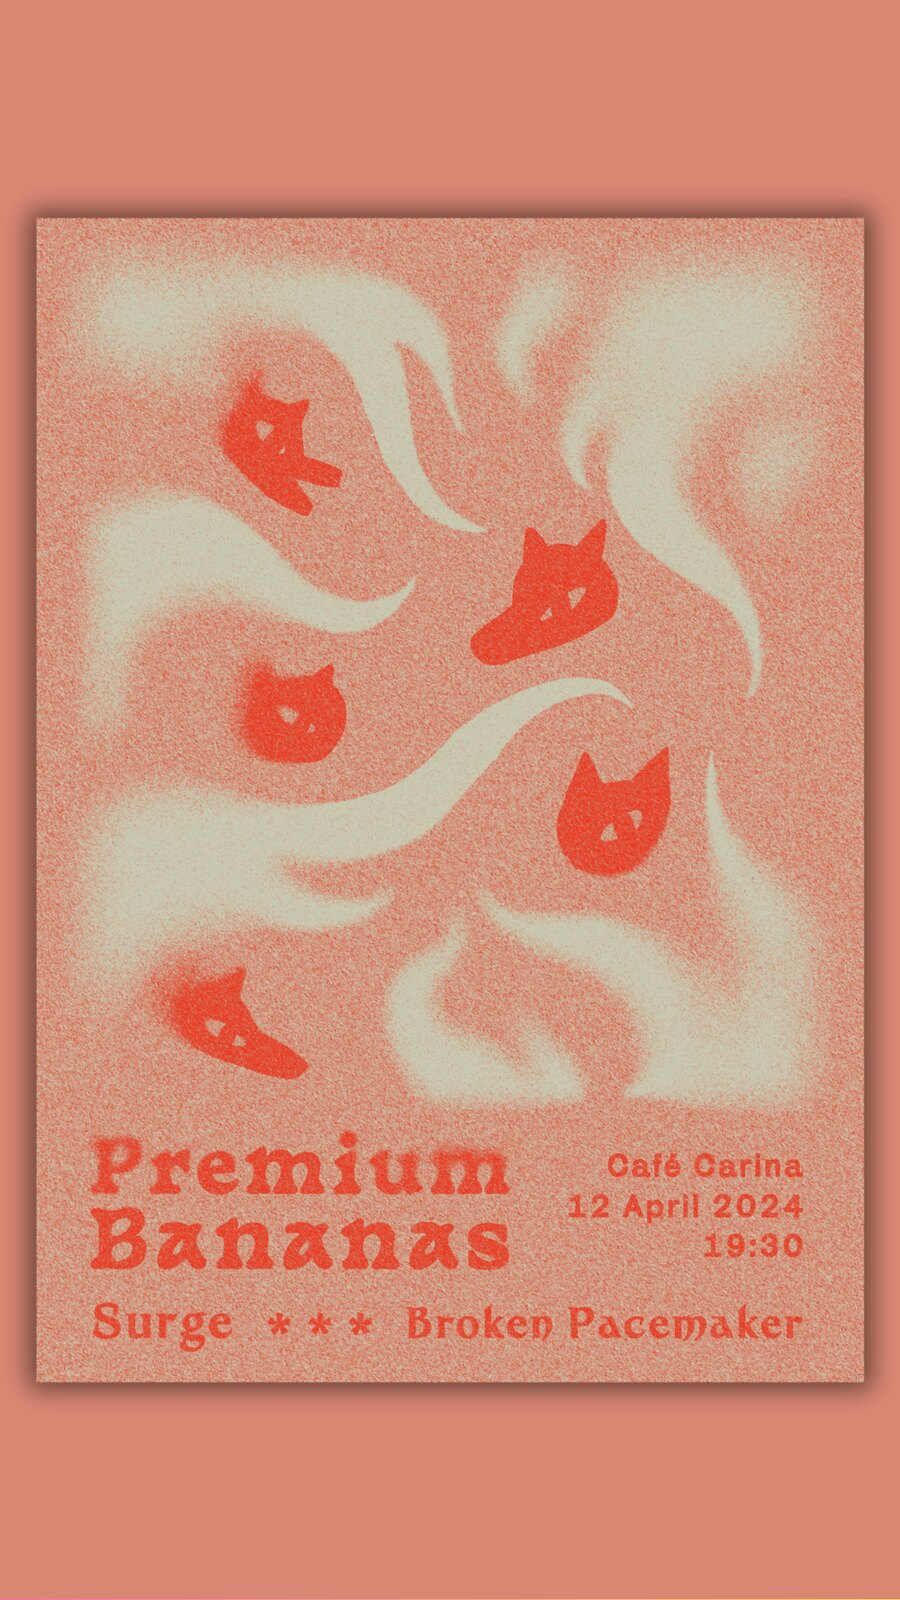 Premium Bananas | Surge | Broken Pacemaker am 12. April 2024 @ Café Carina.